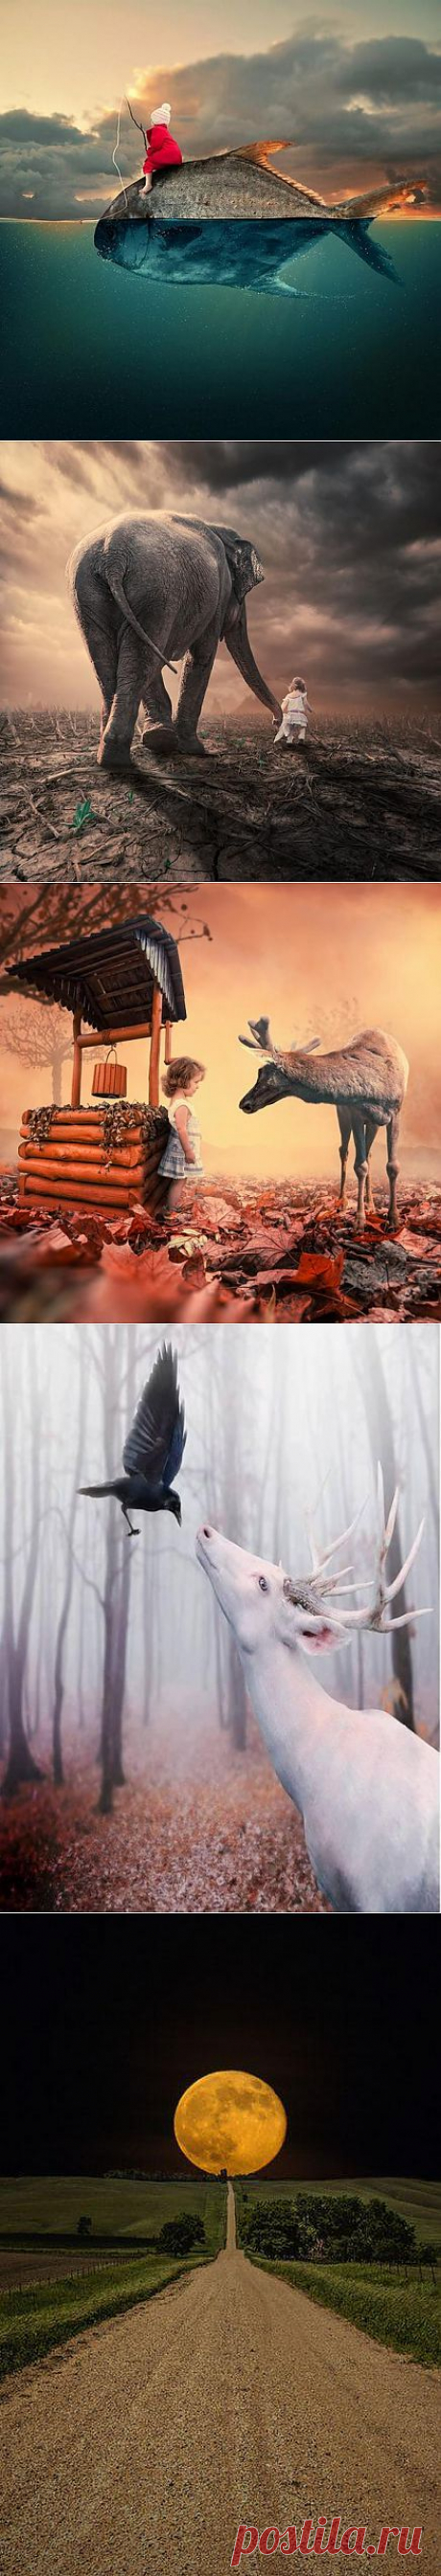 Работы румынского фотохудожника Караша Йонуца. Он создает великолепные сюрреалистичные фотокартины, соединяя абсолютно неожиданные элементы.